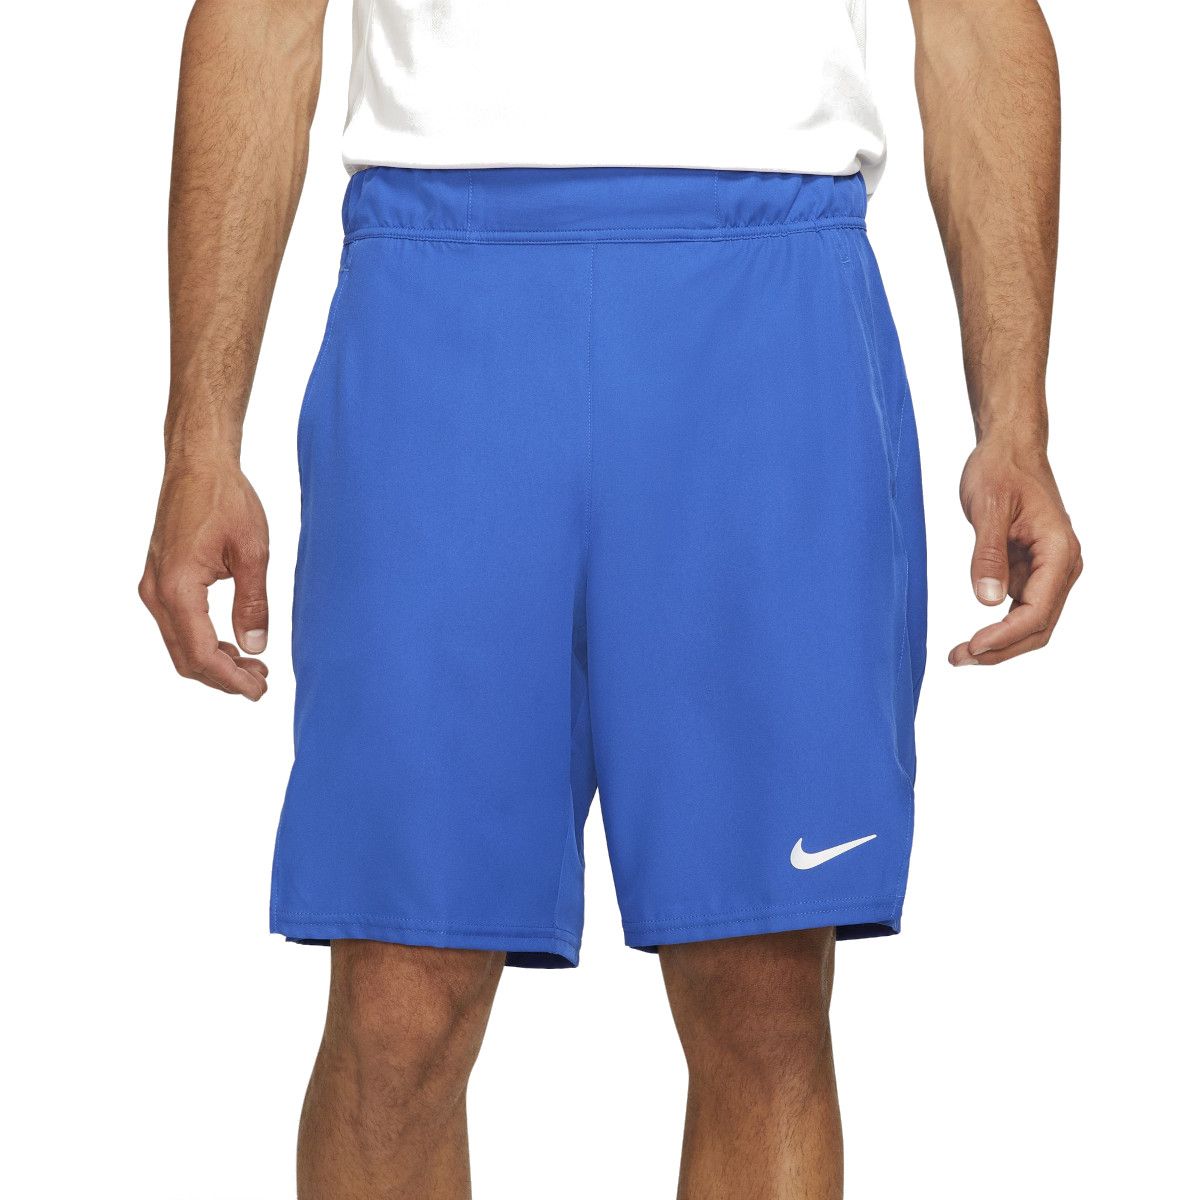 Nike Forward Shorts Men's Shorts